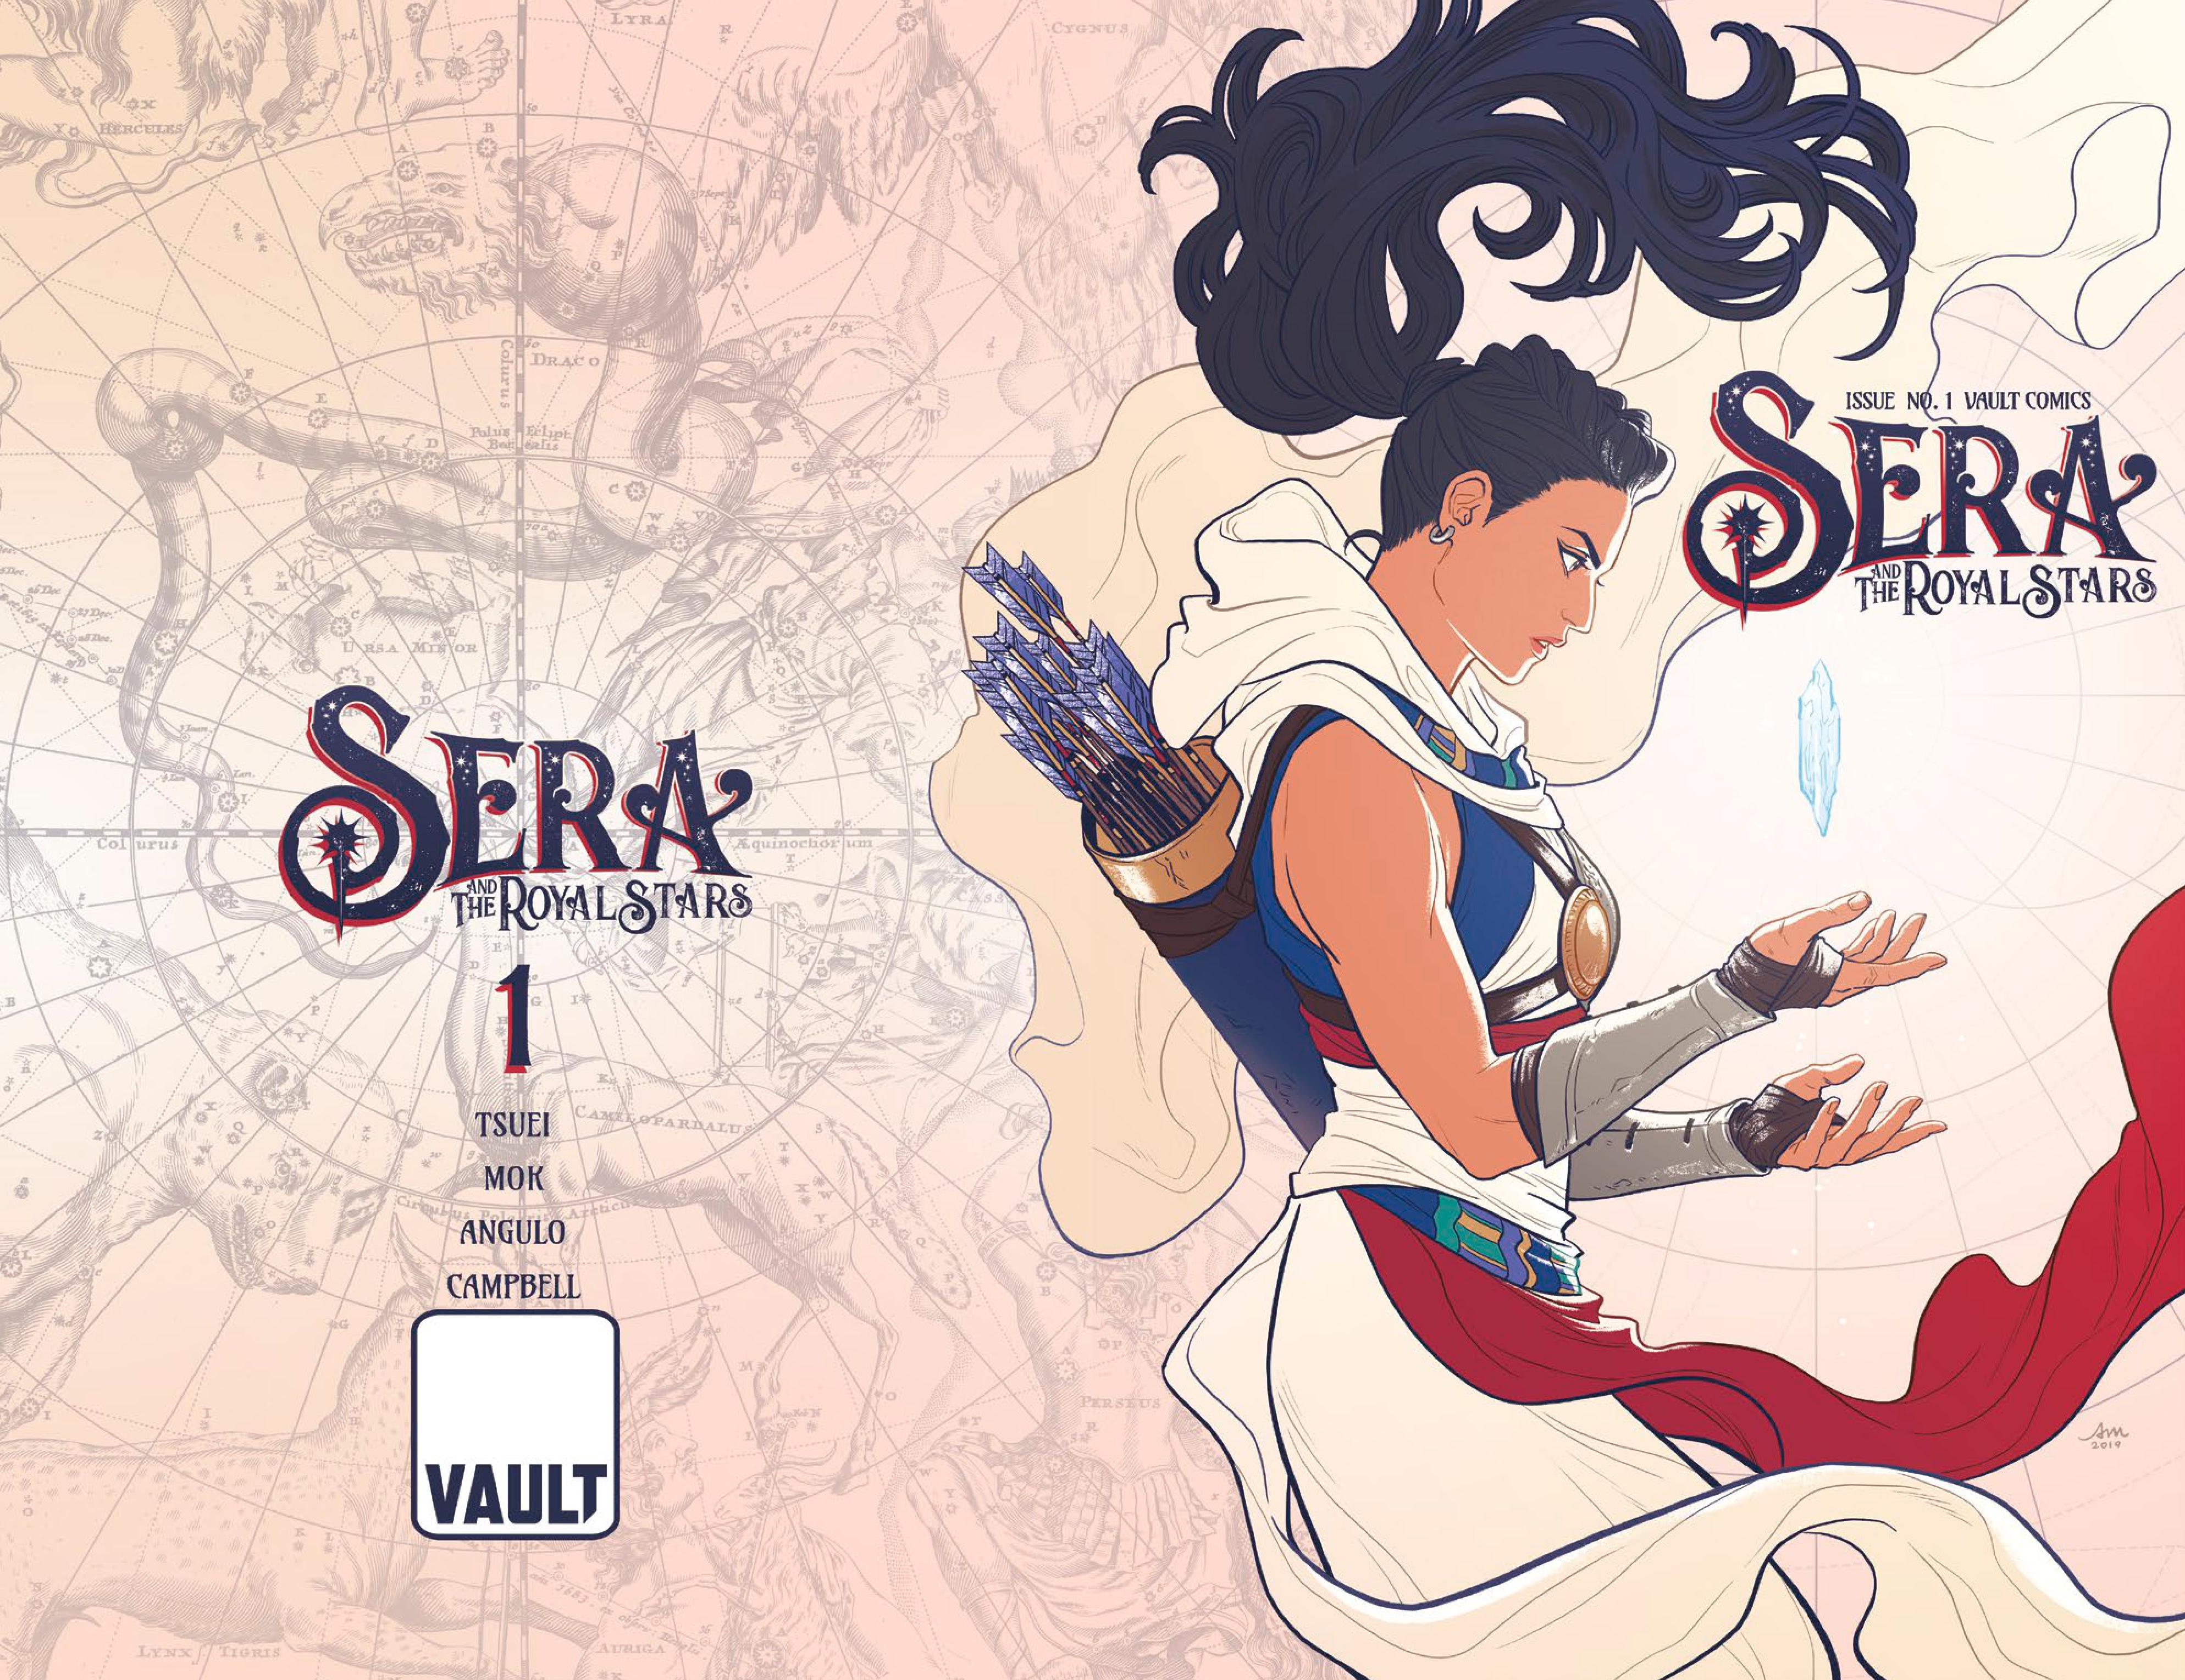 Sera and the Royal Stars #1